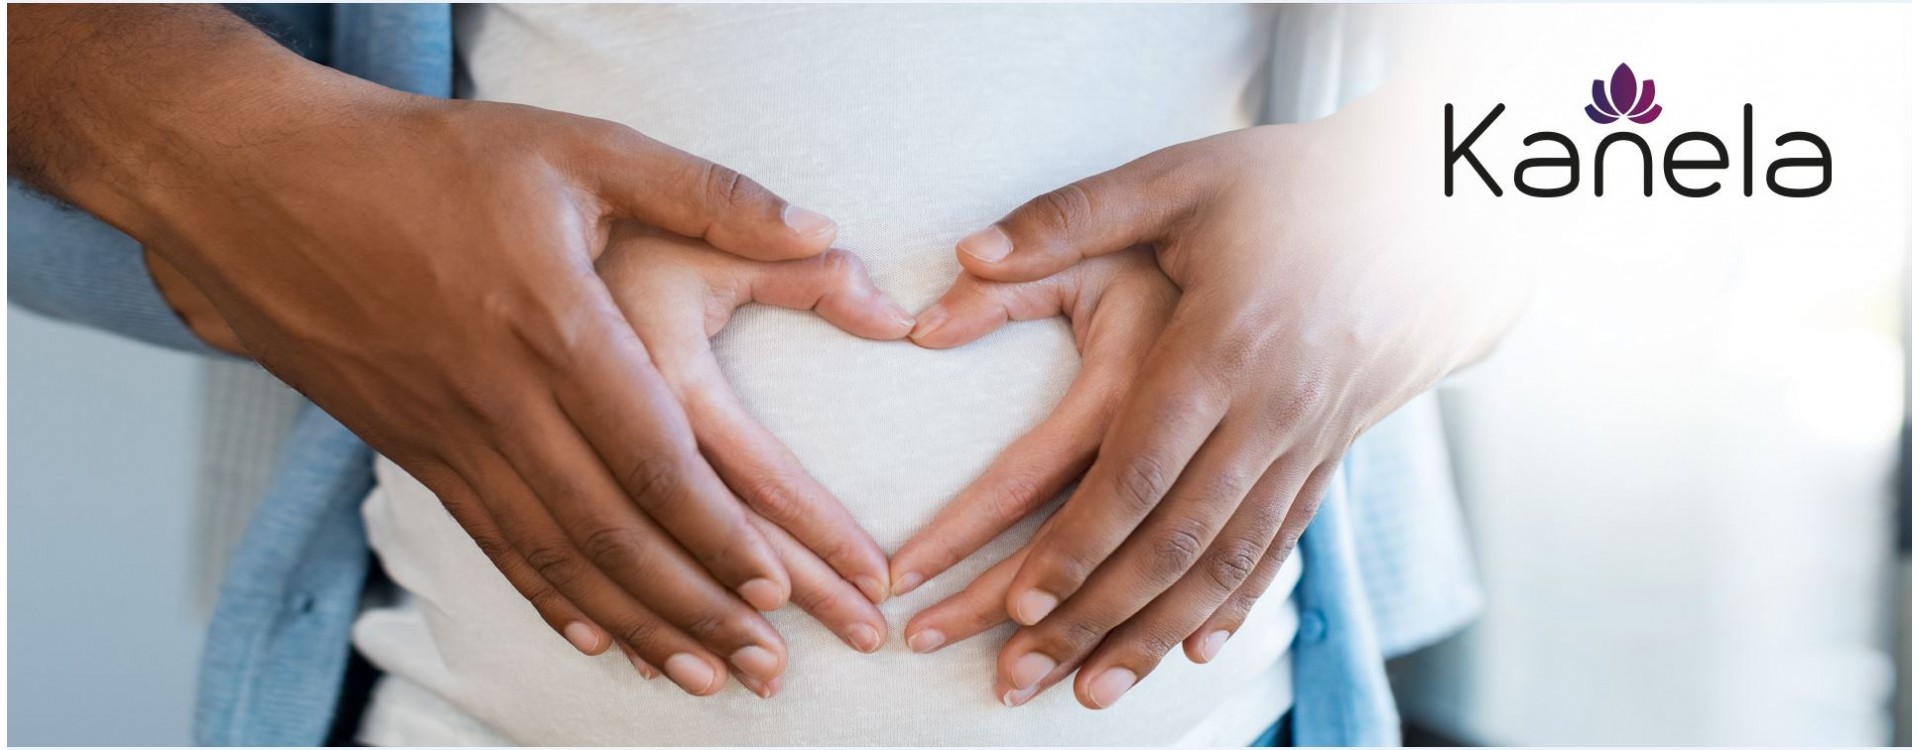 Voler avere figli: cosa aiuta a rimanere finalmente incinta?